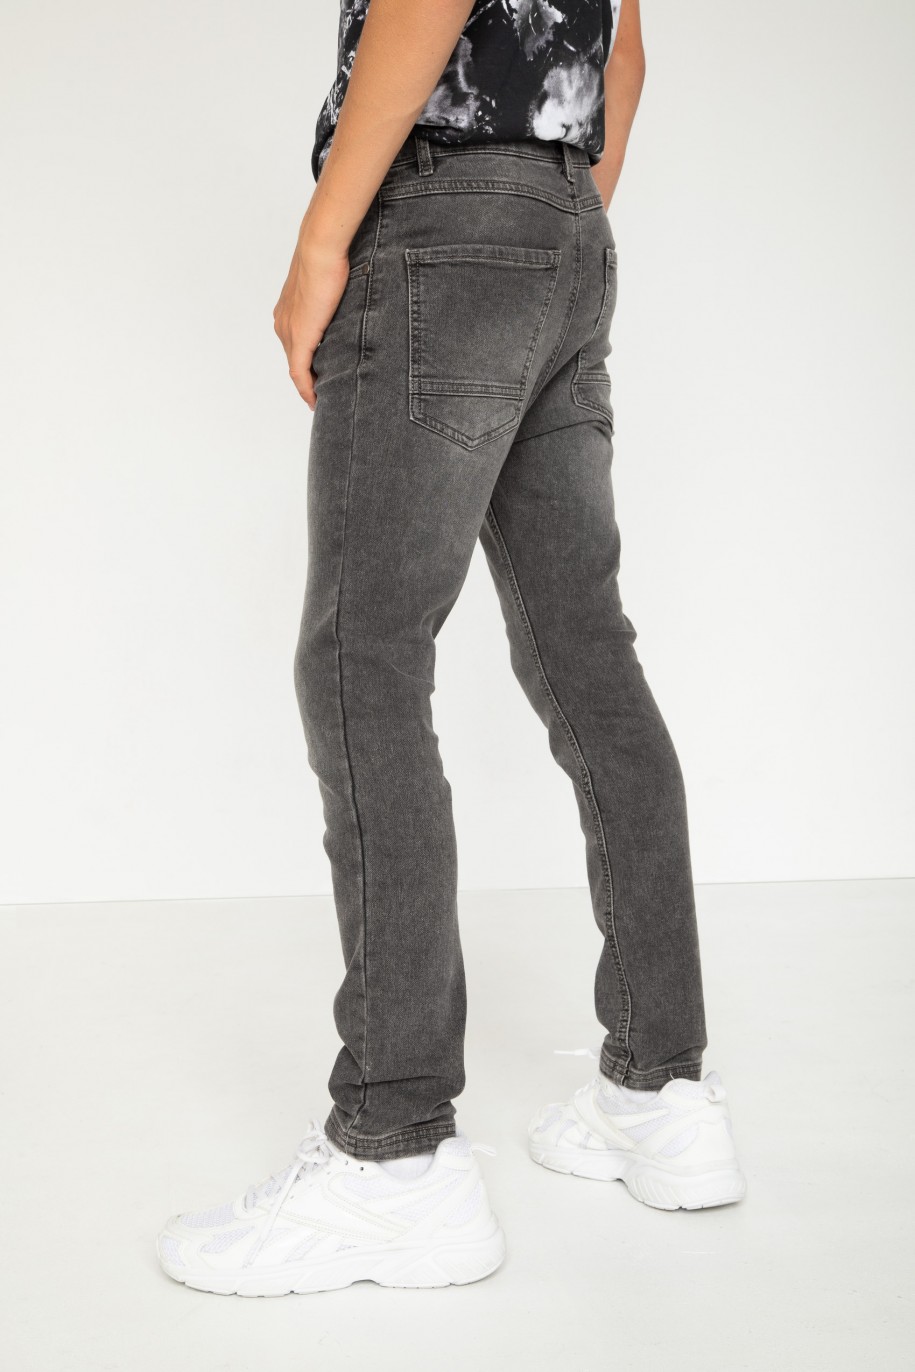 Szare proste jeansy - 44181